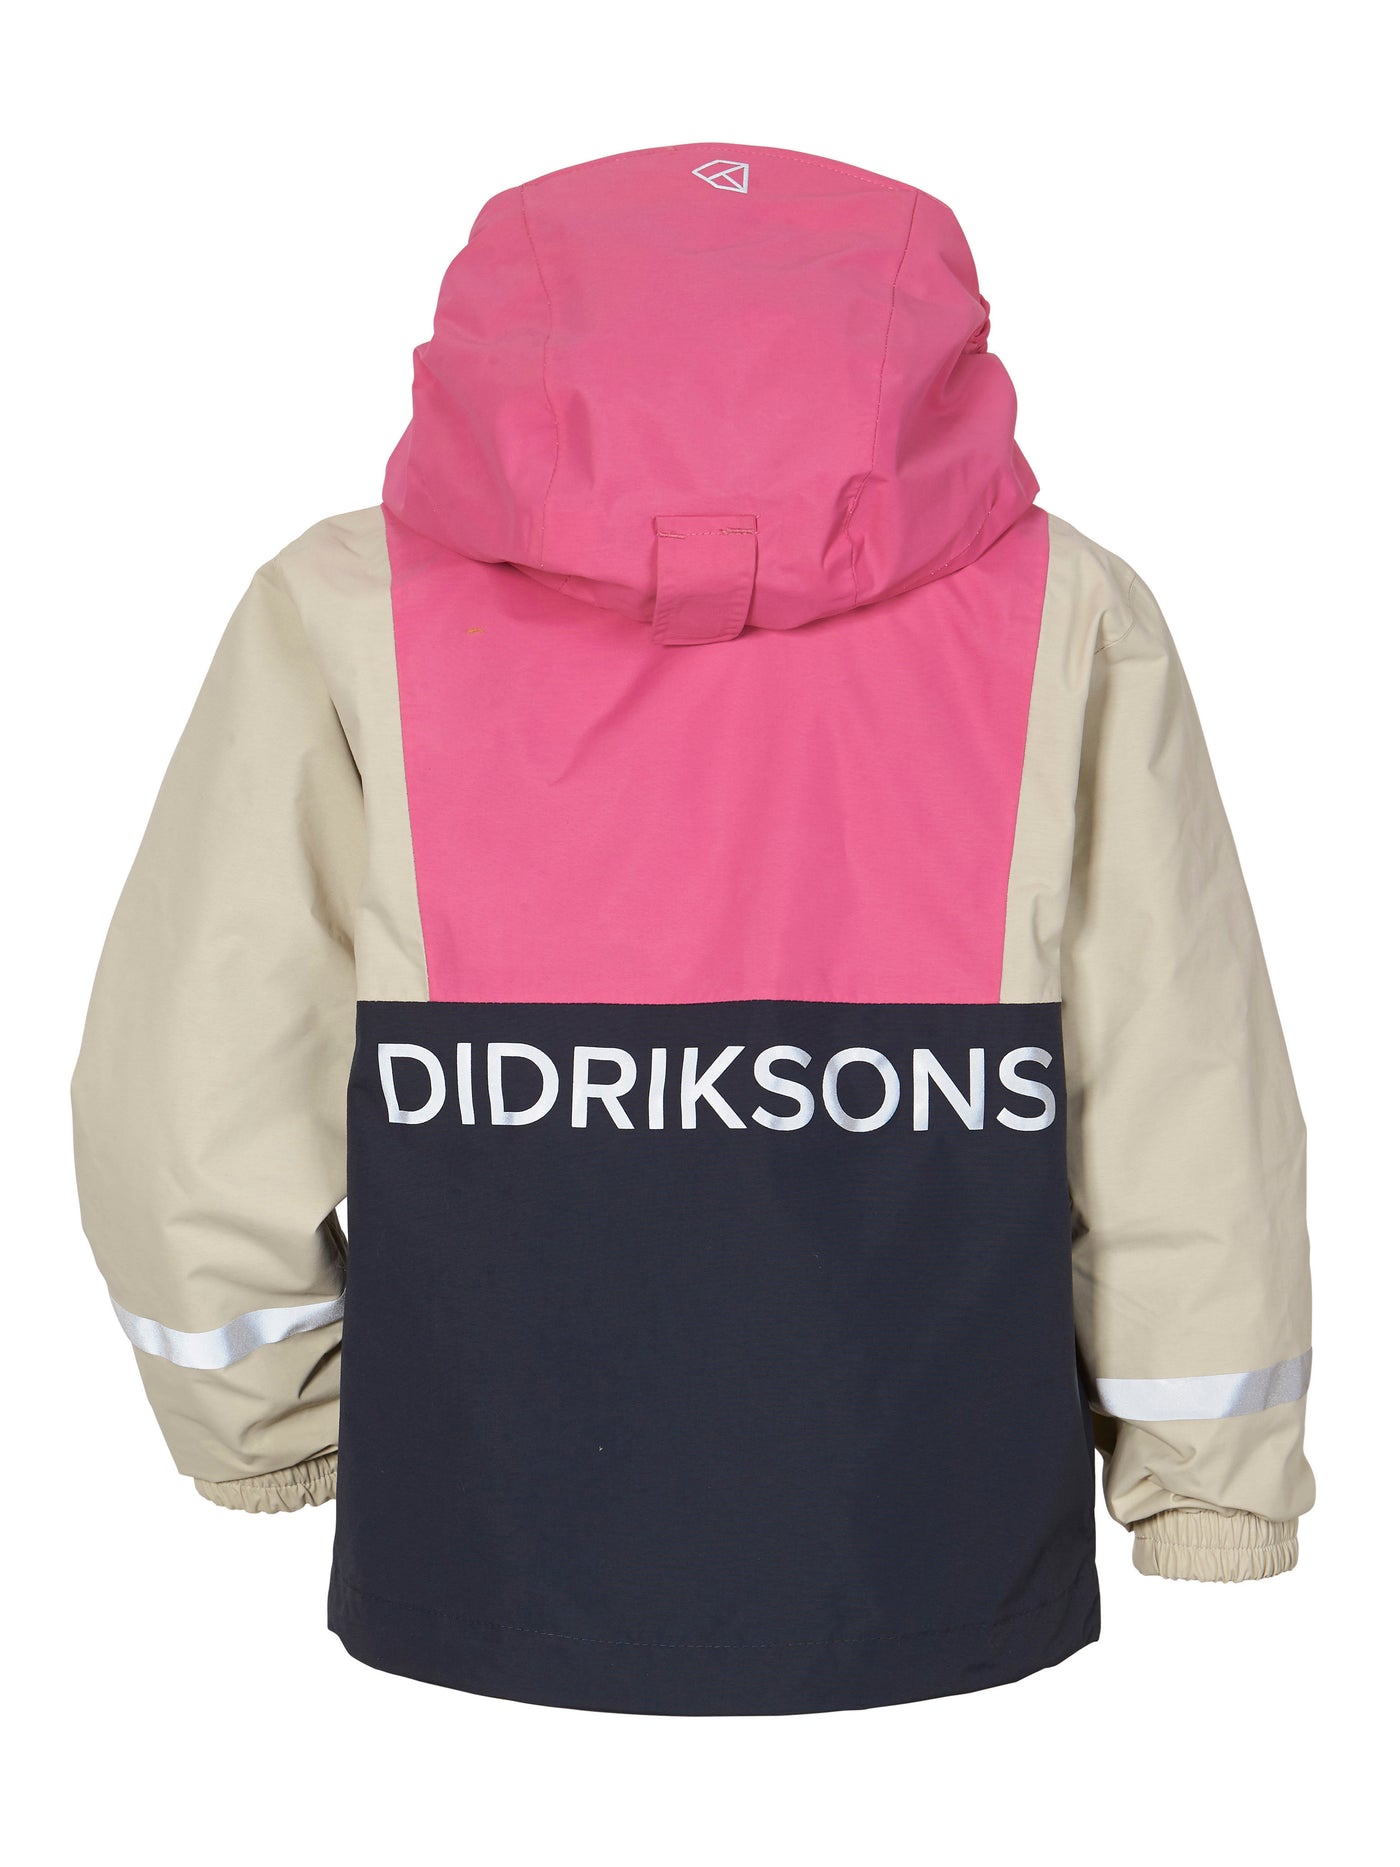 Didriksonsin Block Lasten takki Sweet Pink värissä takaa päin